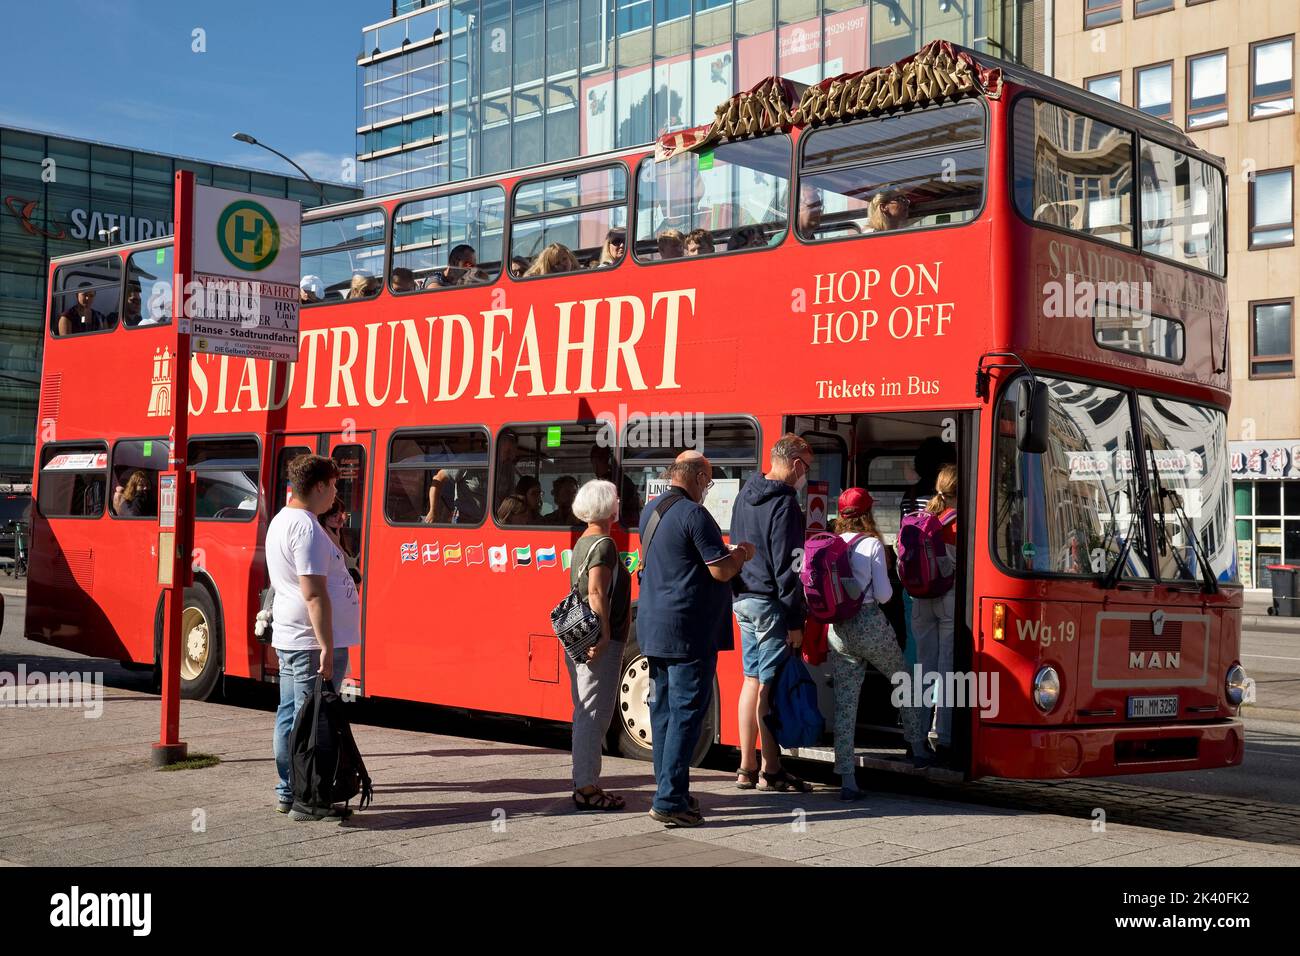 Le persone salite a bordo dell'autobus turistico a due piani rosso, Germania, Amburgo Foto Stock